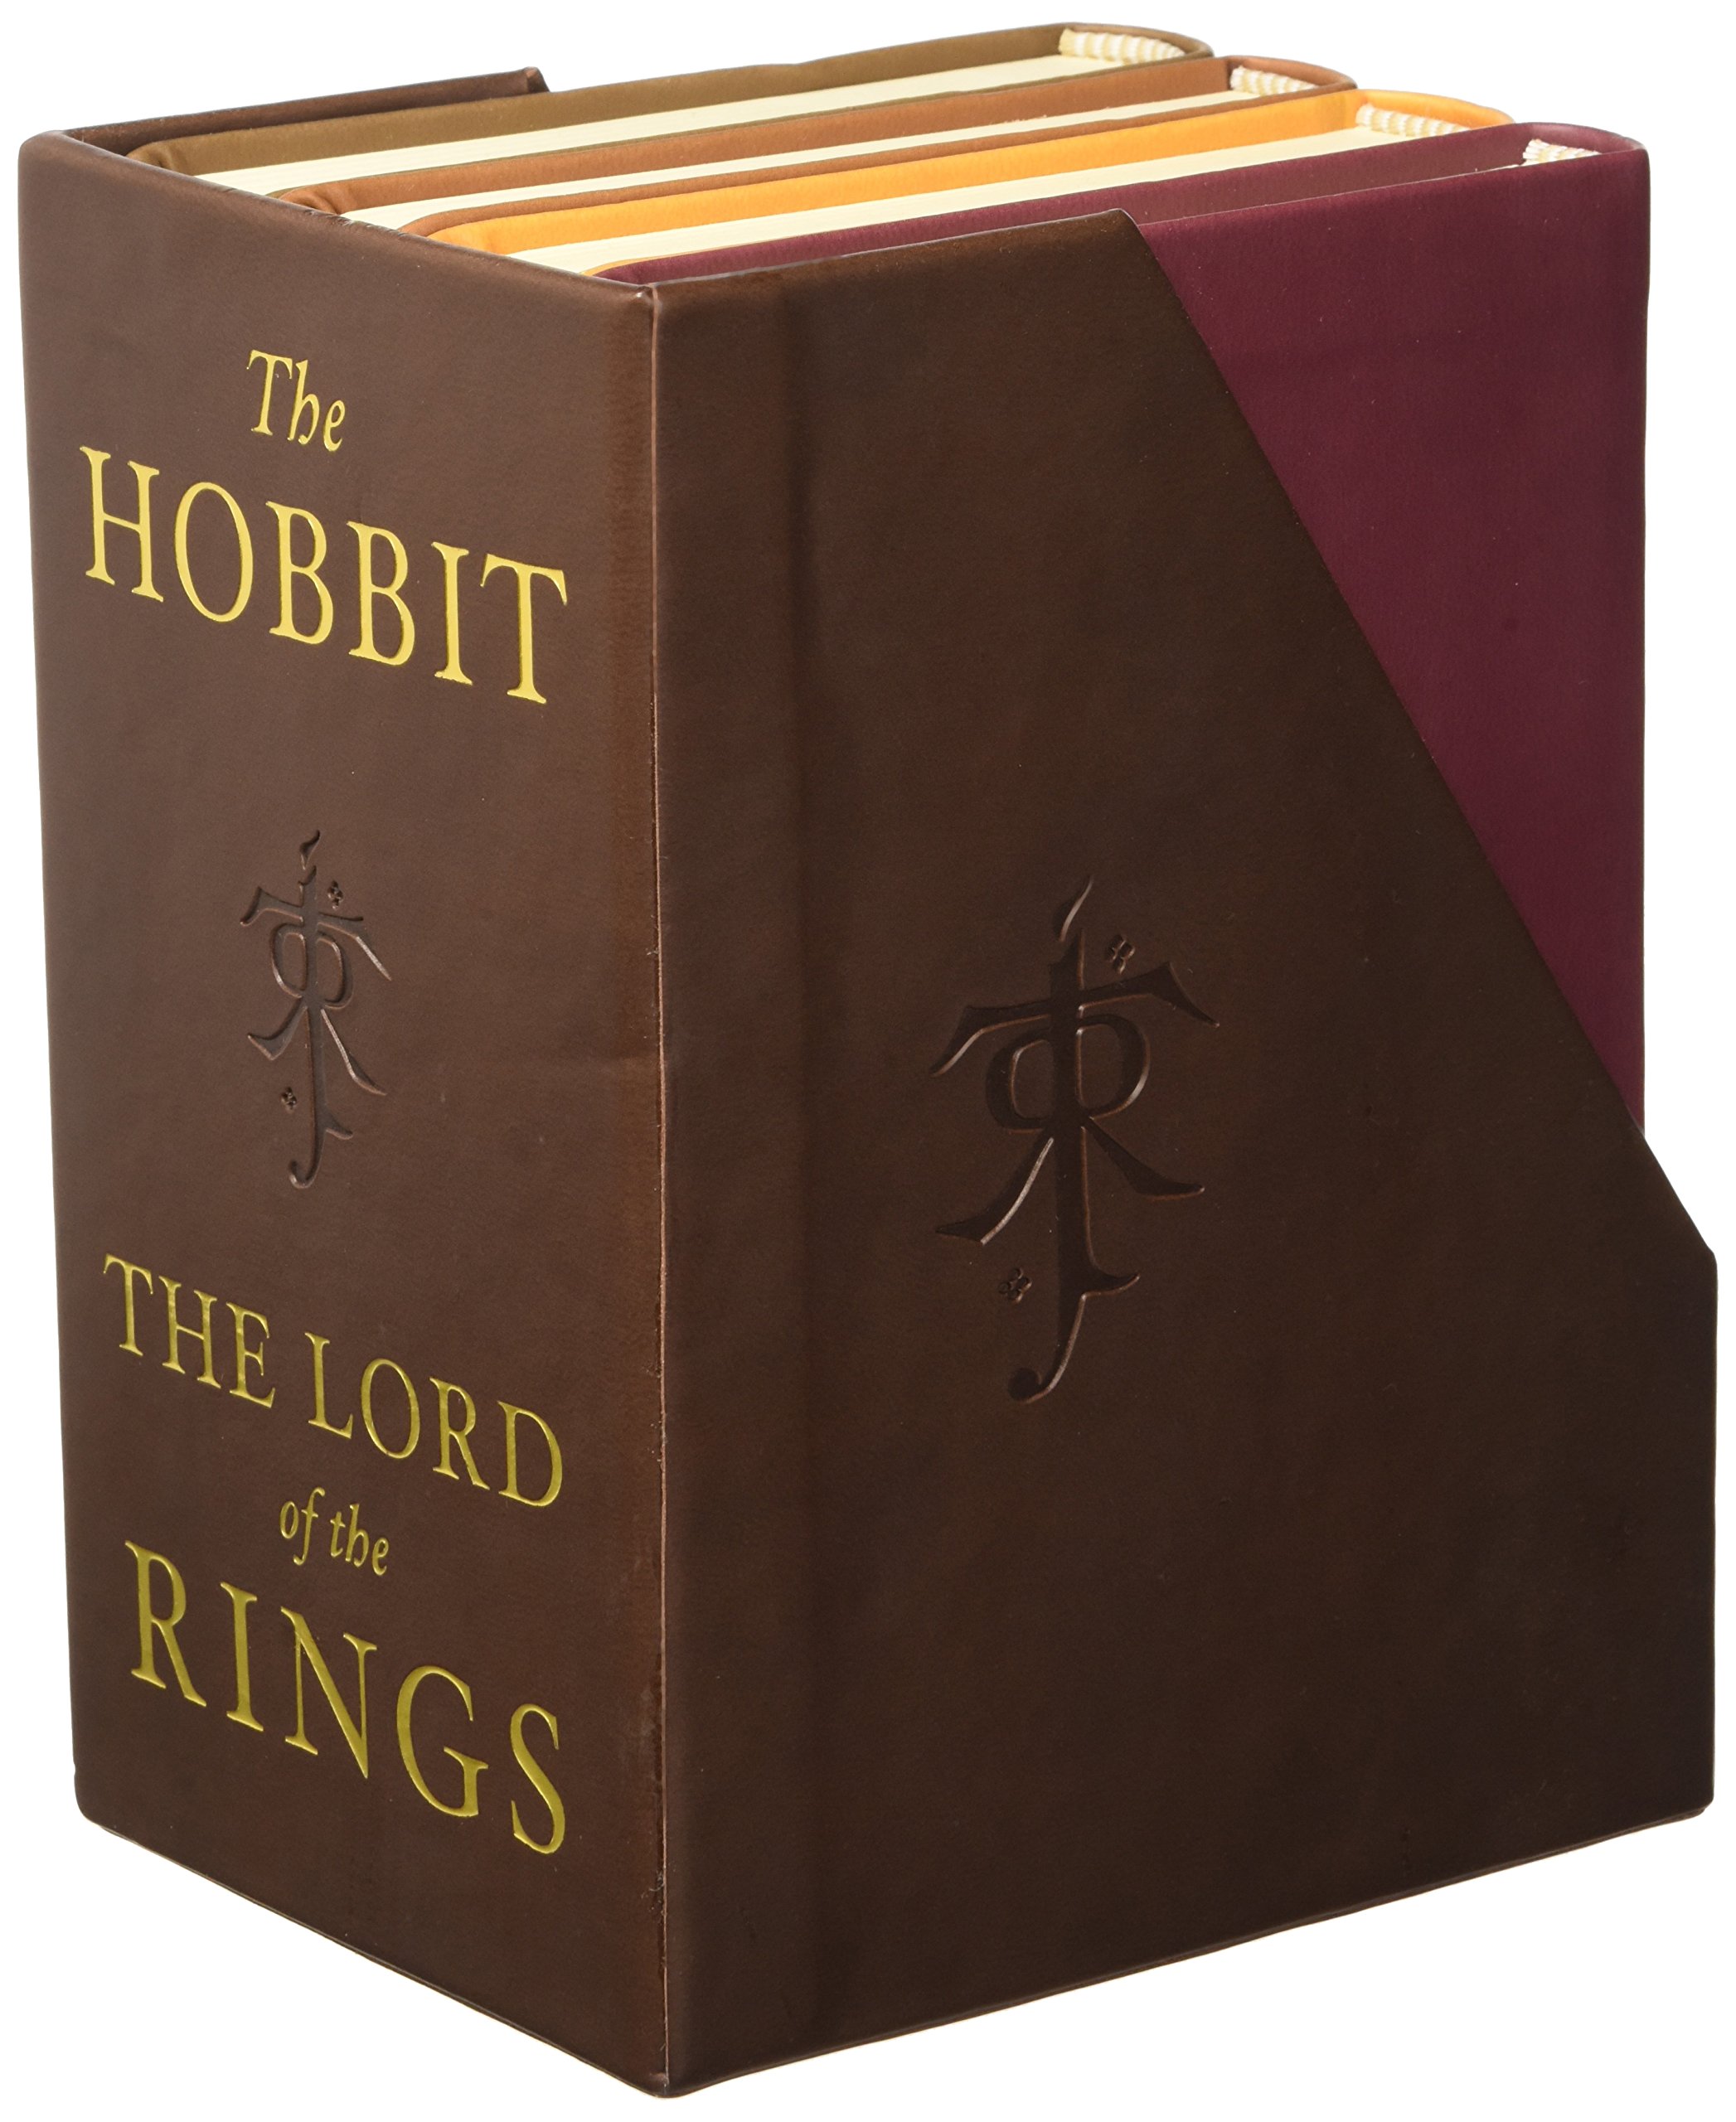 La Historia del Hobbit de jrr tolkien